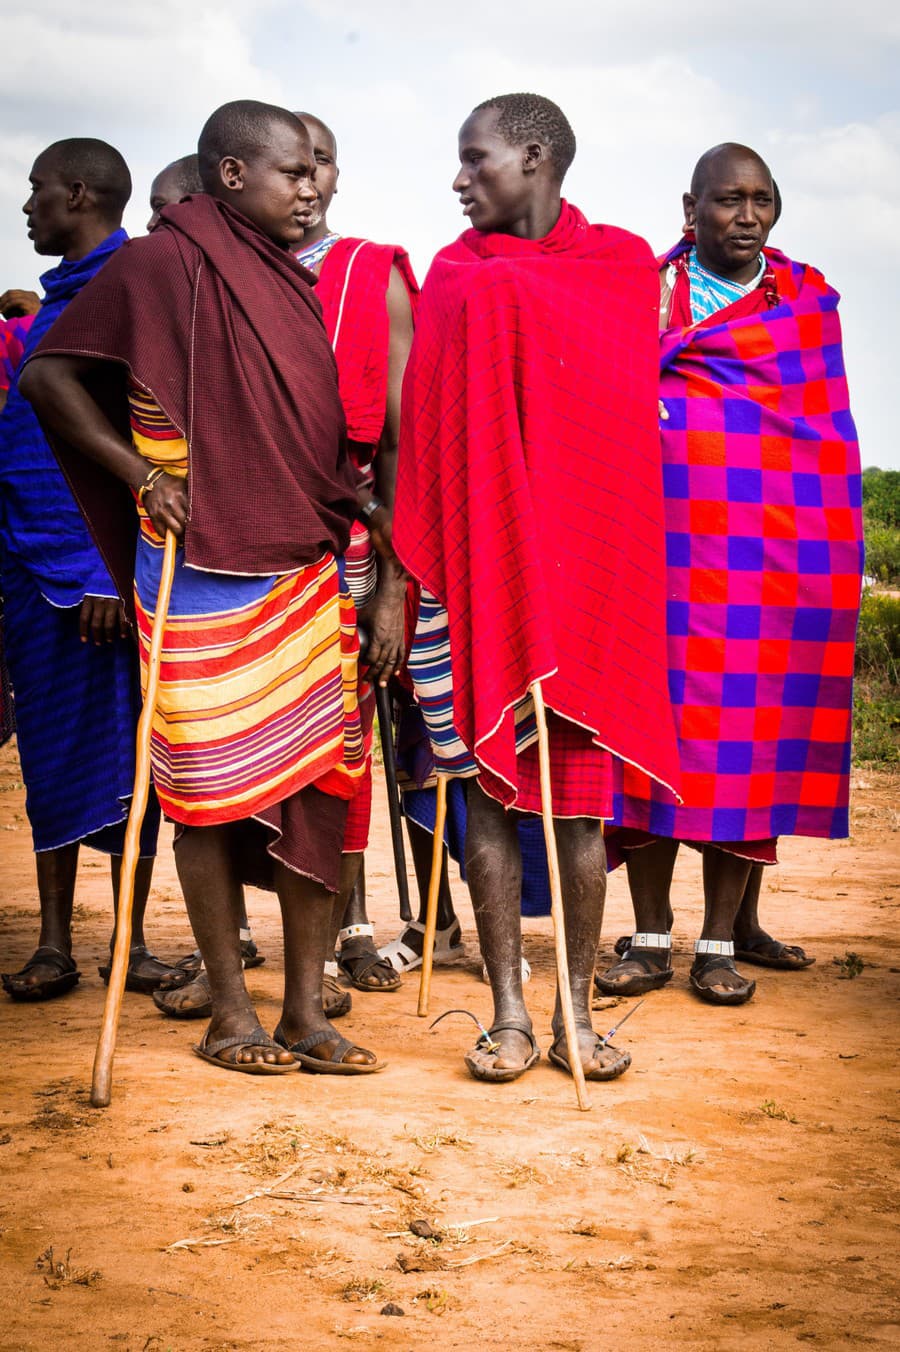 Masajovia patria k najznámejším